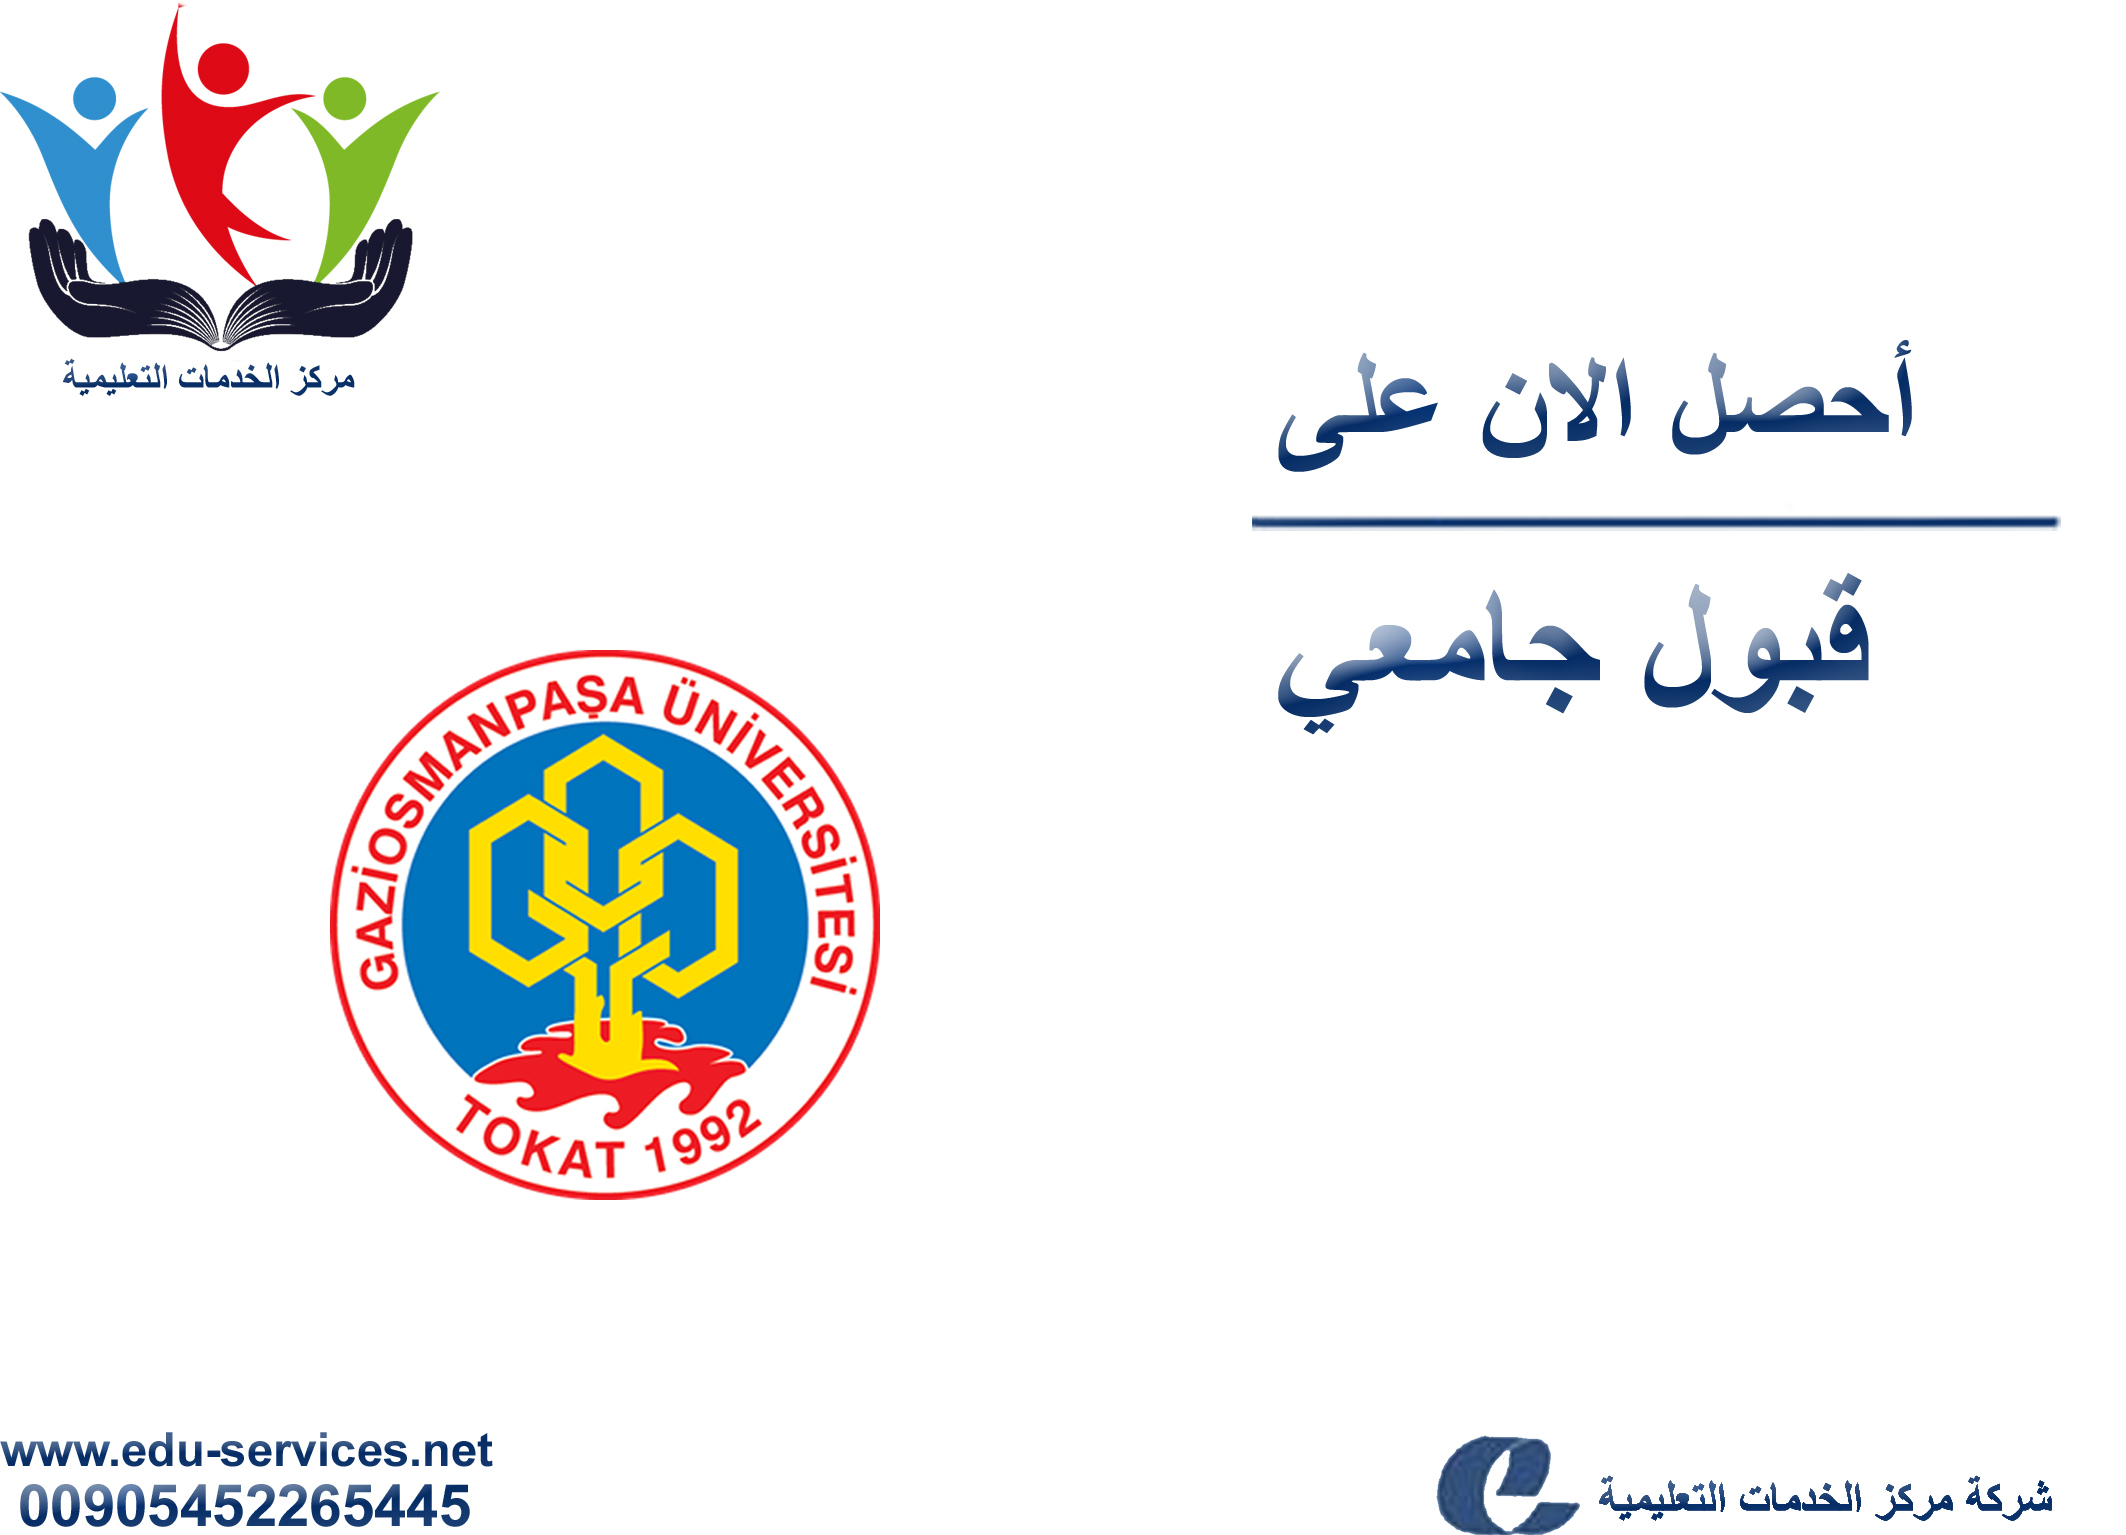 افتتاح التسجيل في جامعة غازي عثمان باشا للعام 2019-2020